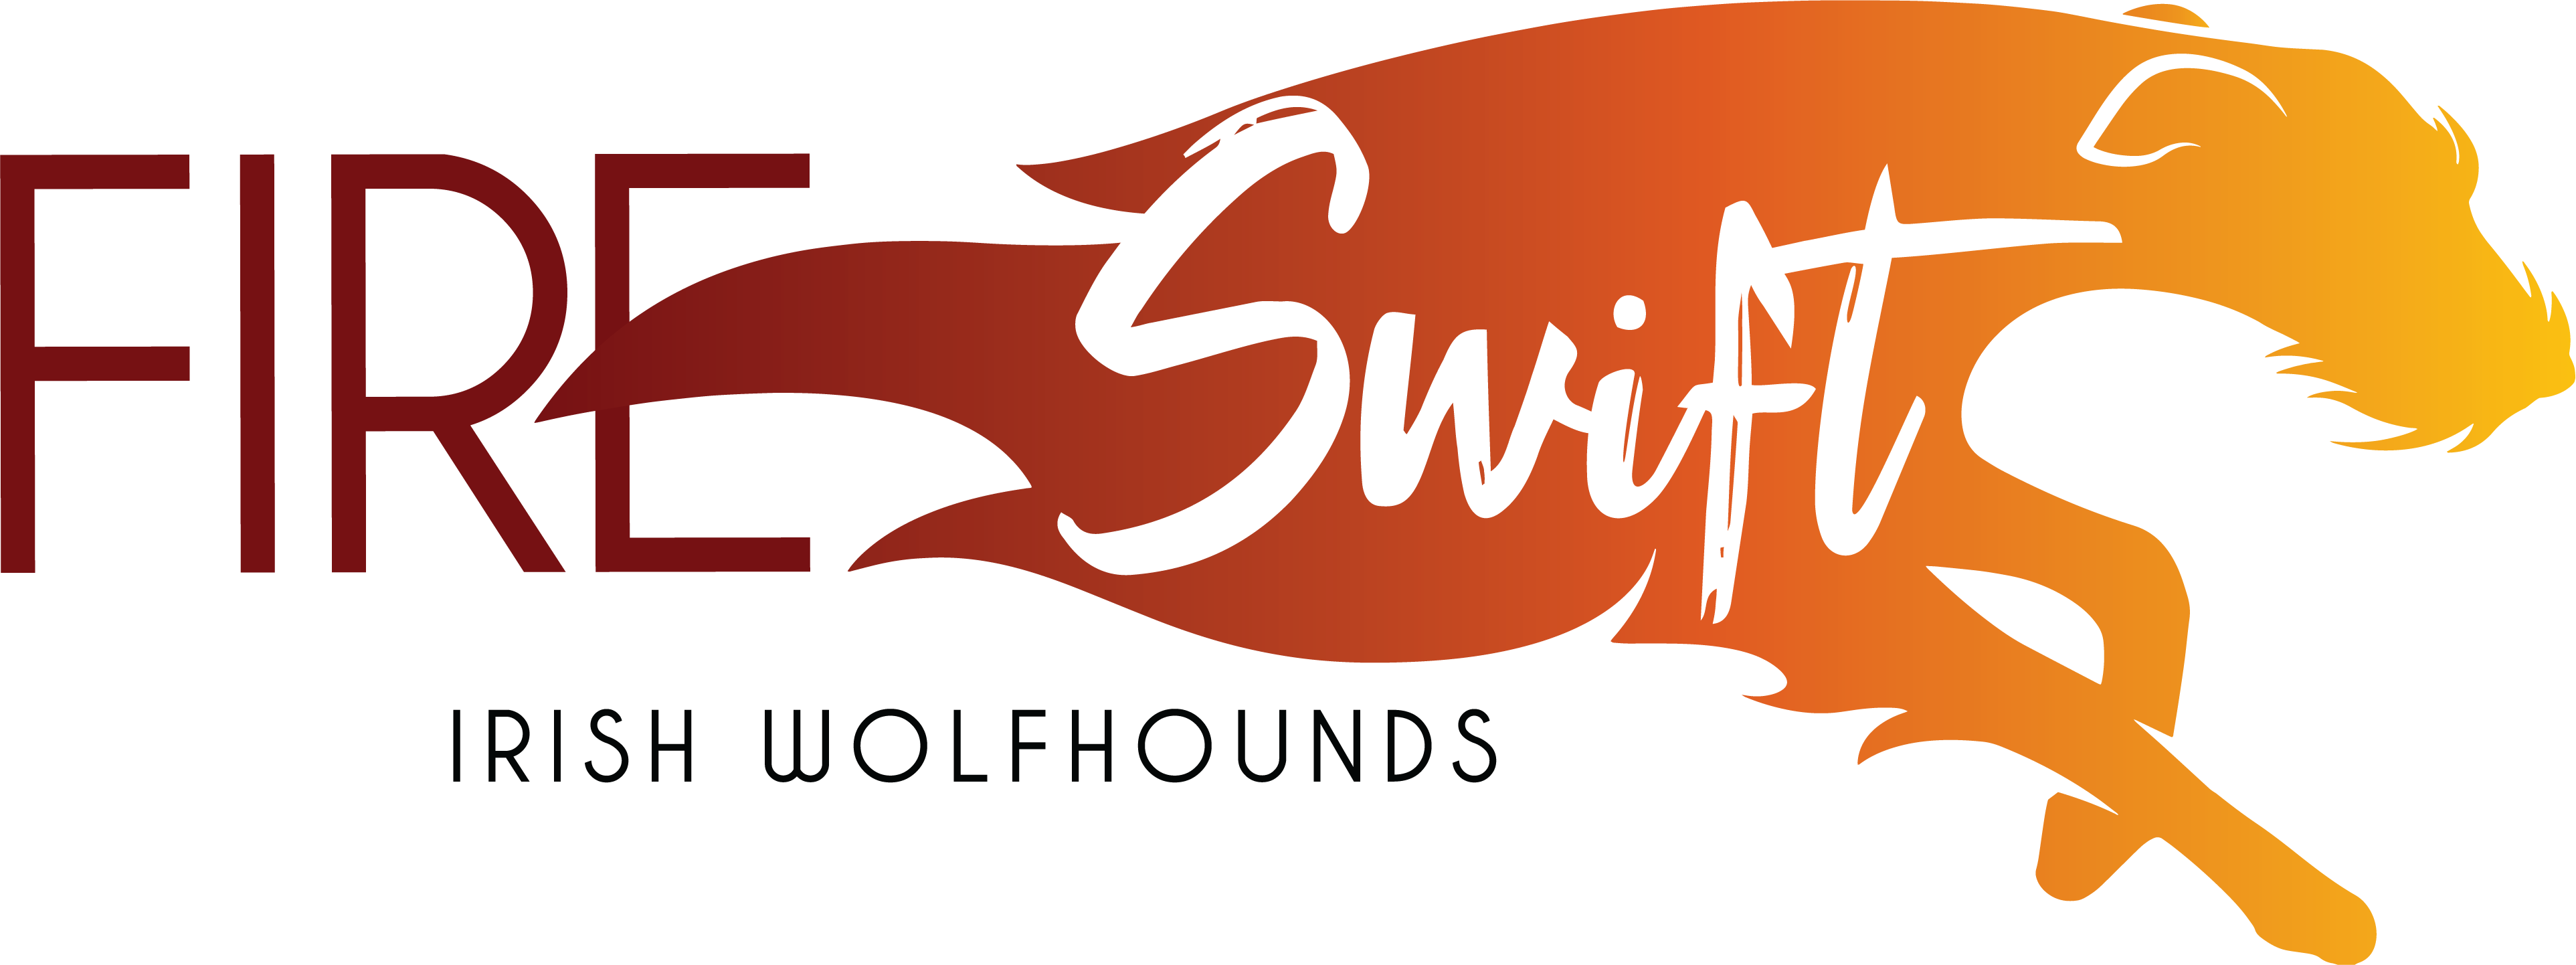 Fireswift Irish Wolfhounds